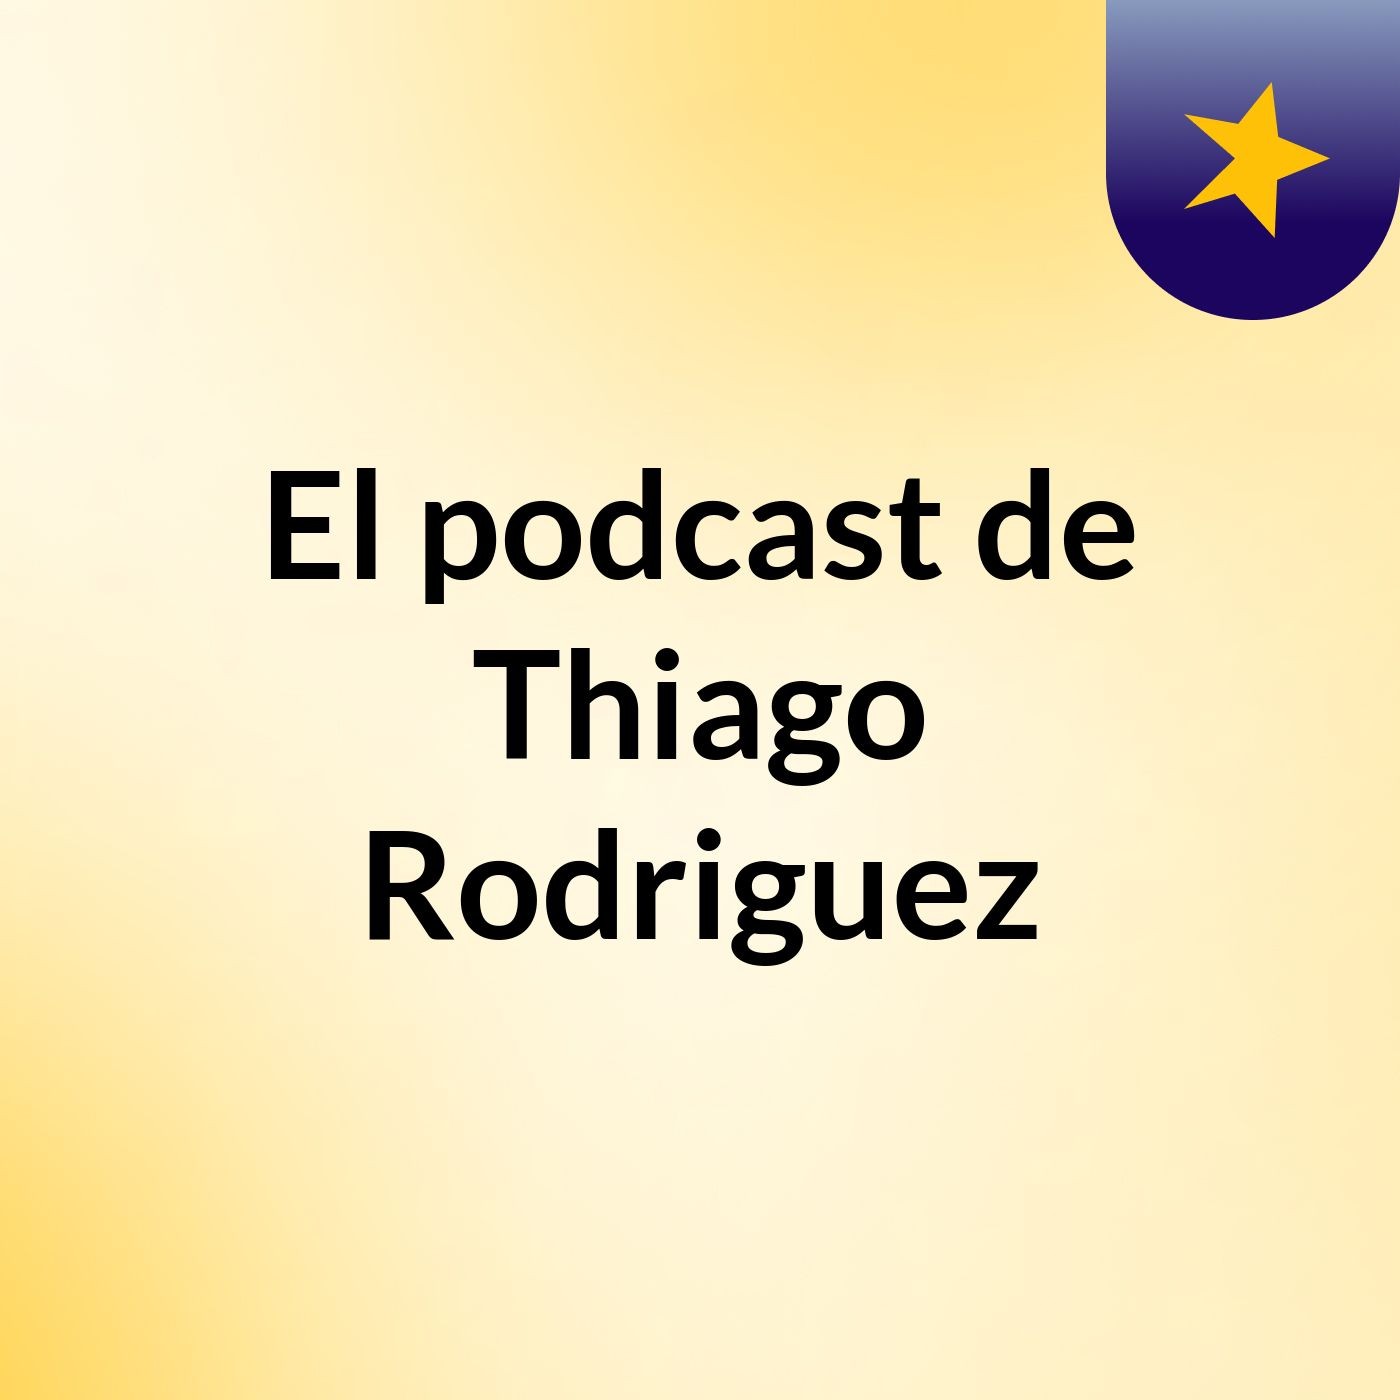 El podcast de Thiago Rodriguez